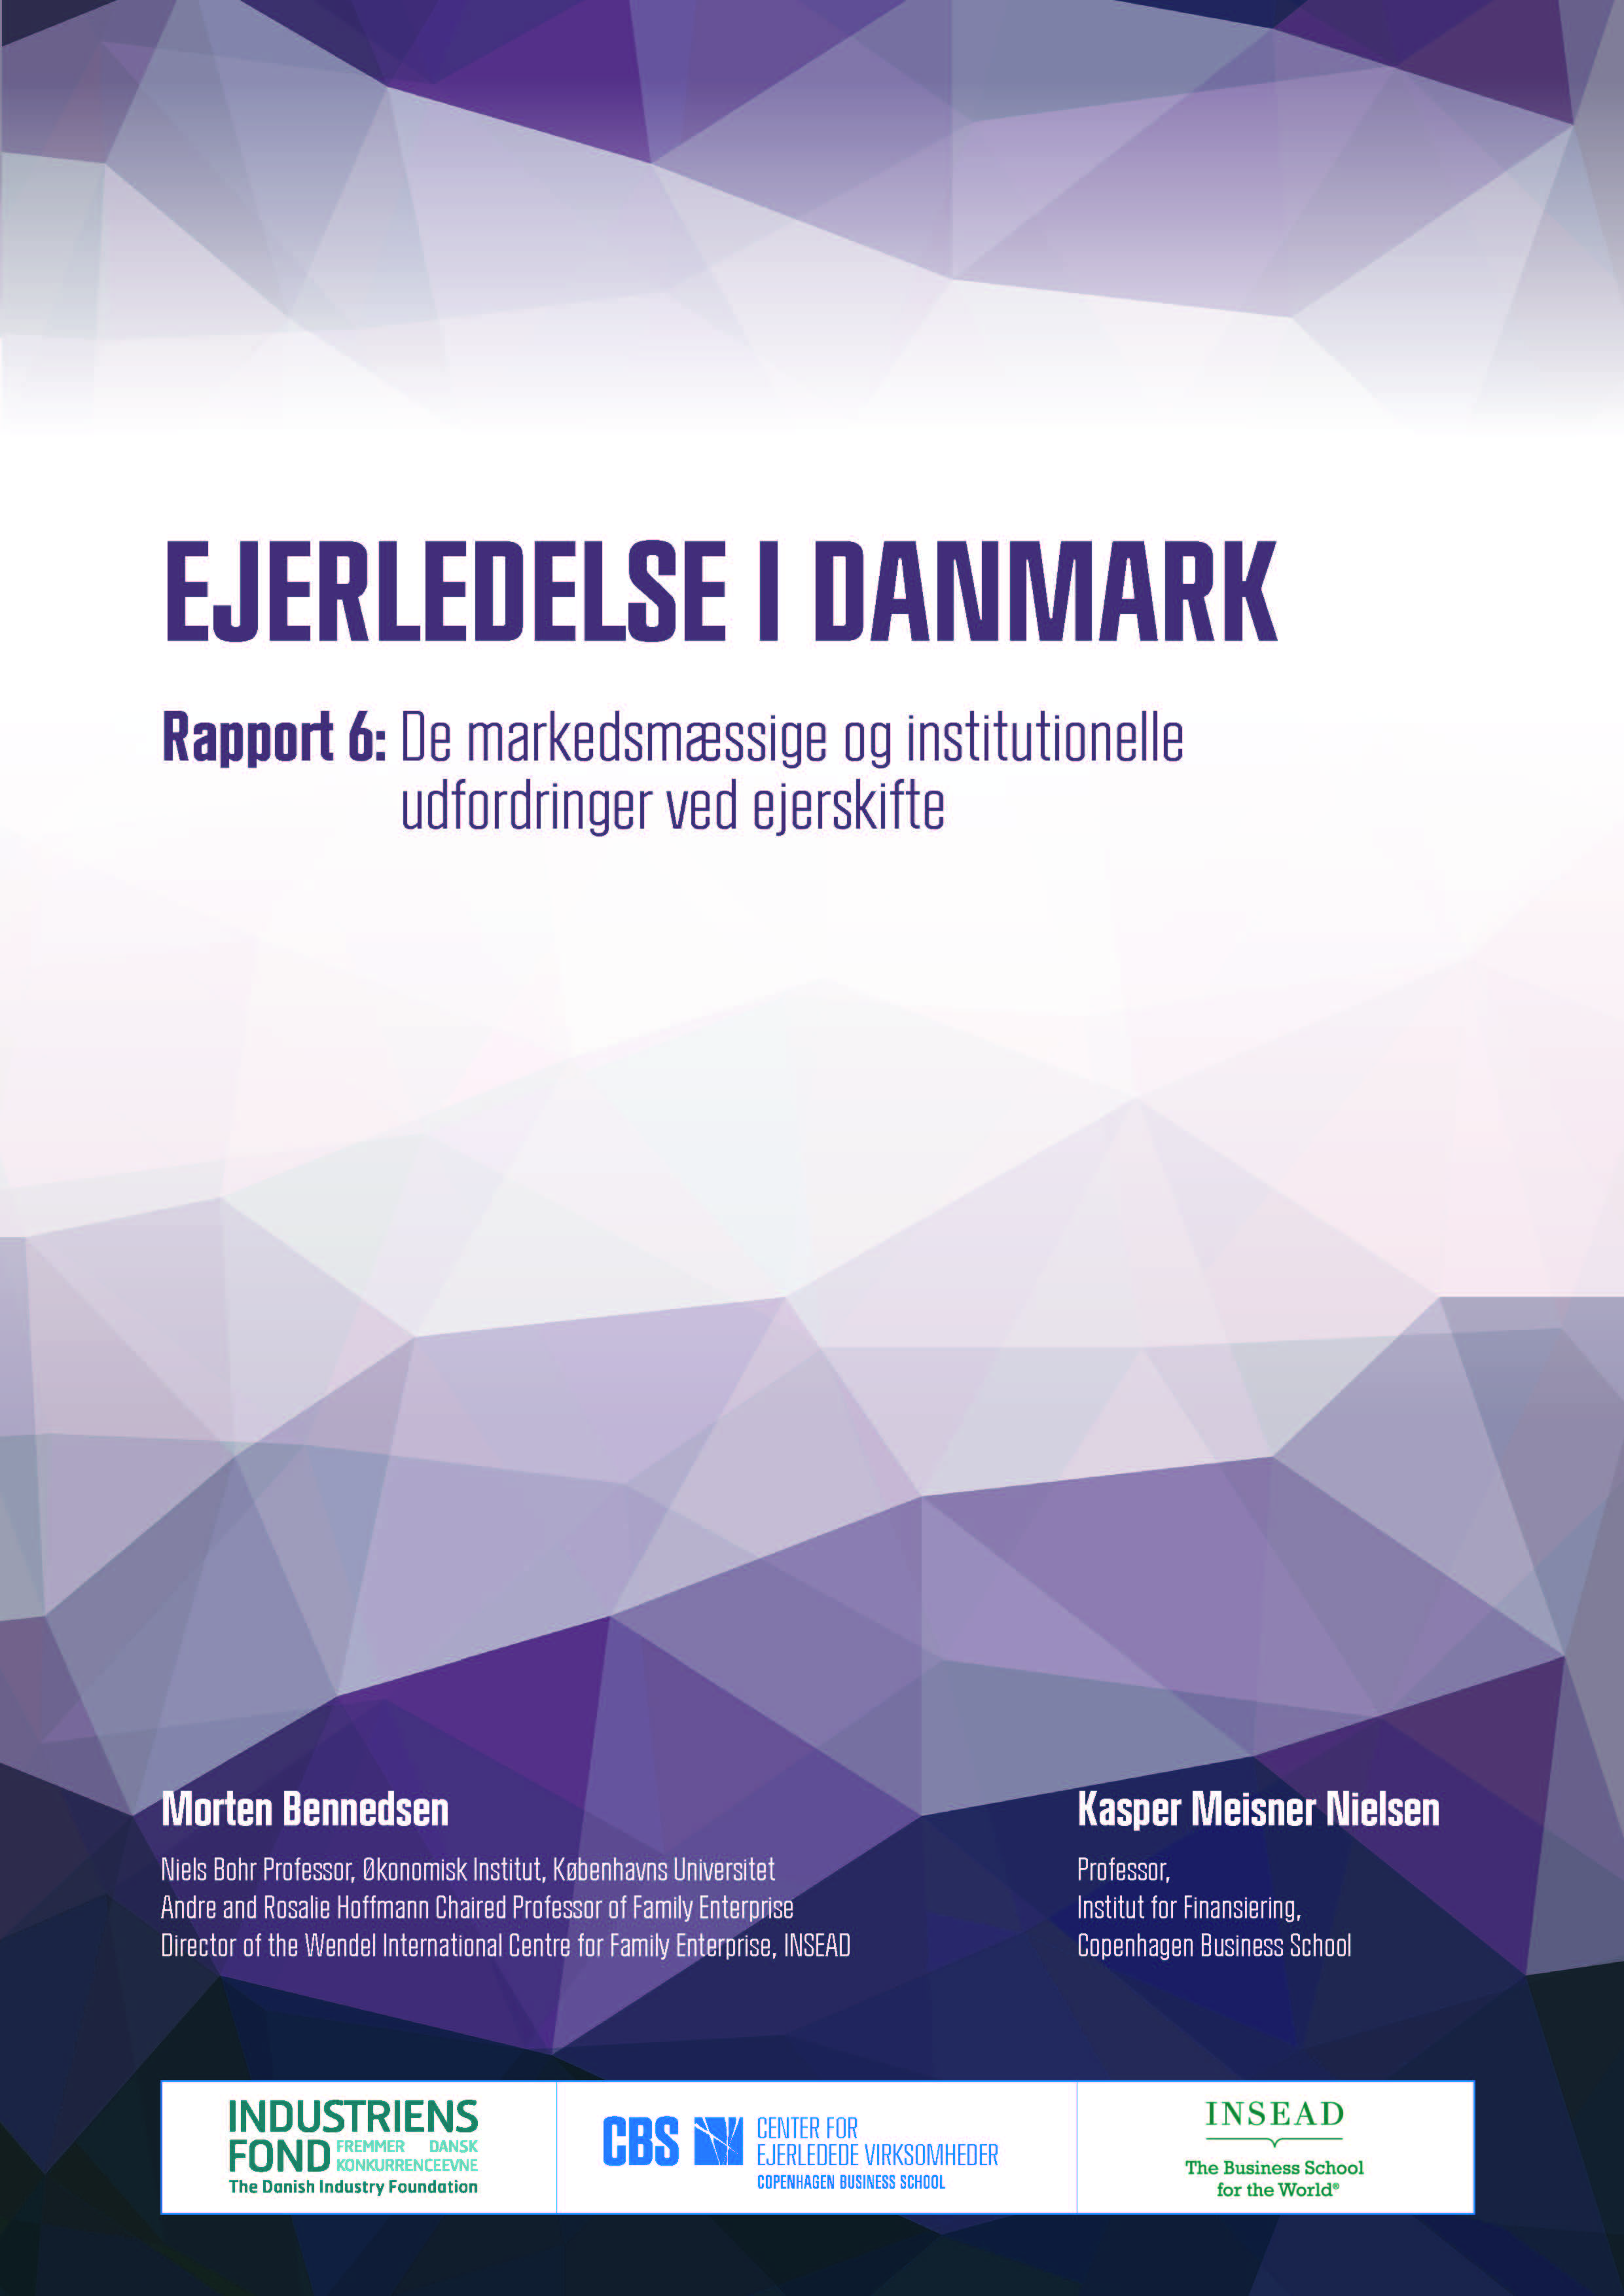 Billede af forsiden til rapporten: De markedsmæssige og institutionelle udfordringer ved ejerskifte